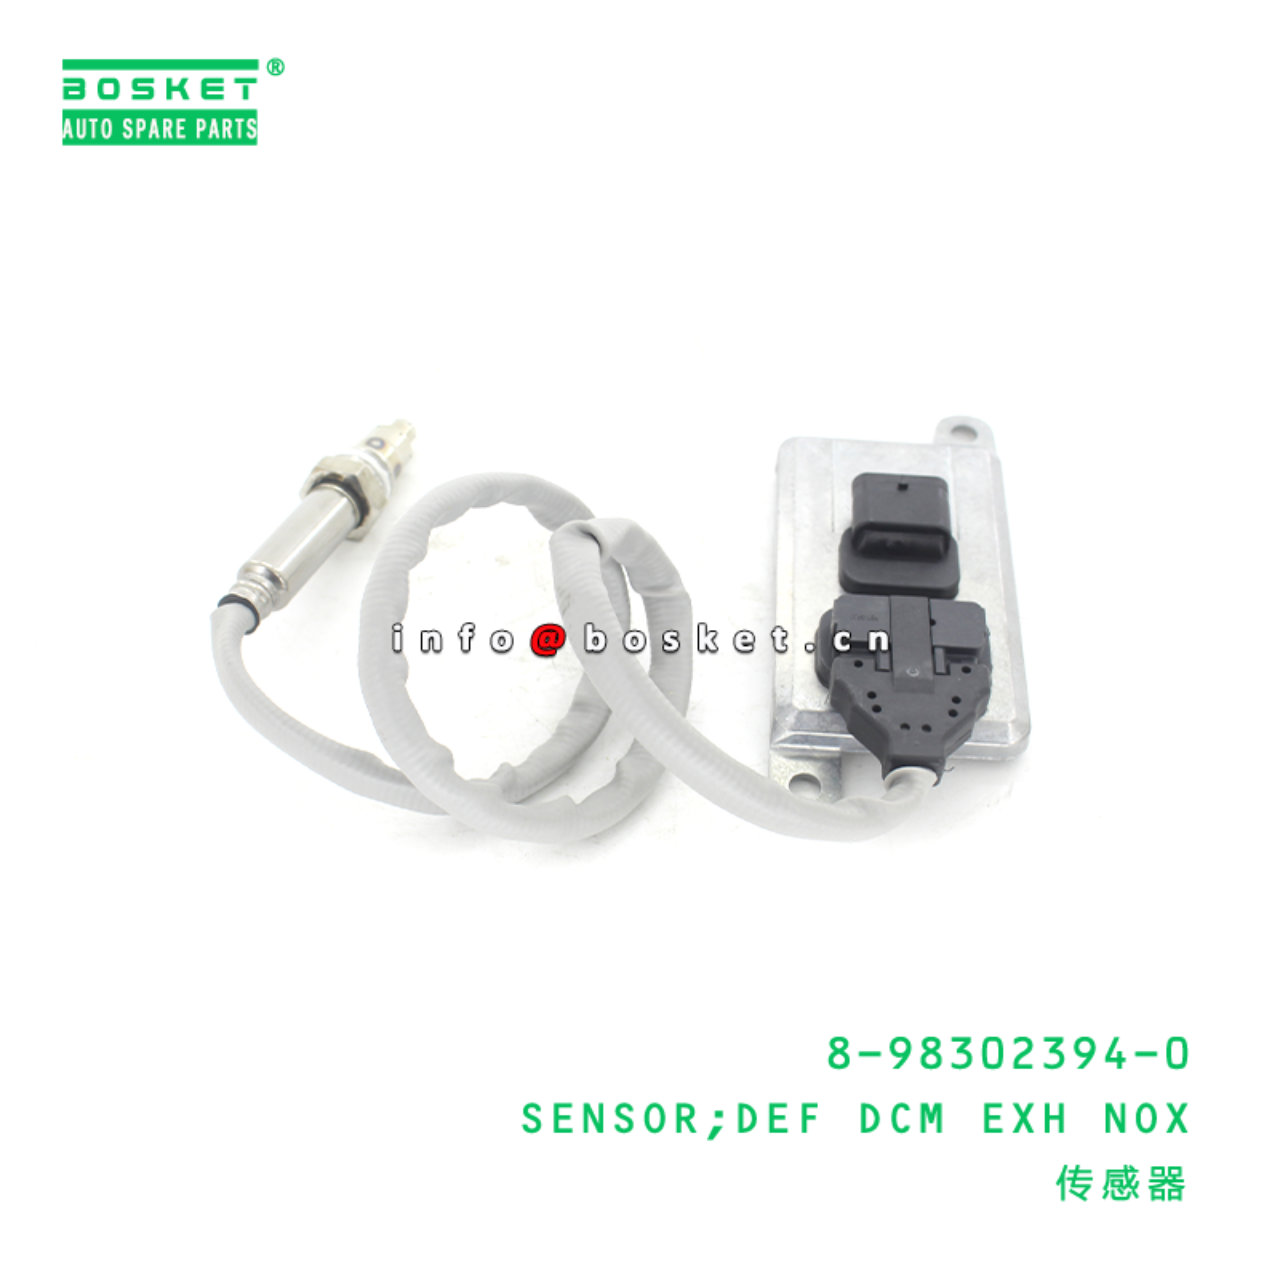 8-98302394-0 Def Dcm Exhaust Nox Sensor Suitable for ISUZU FRR 8983023940